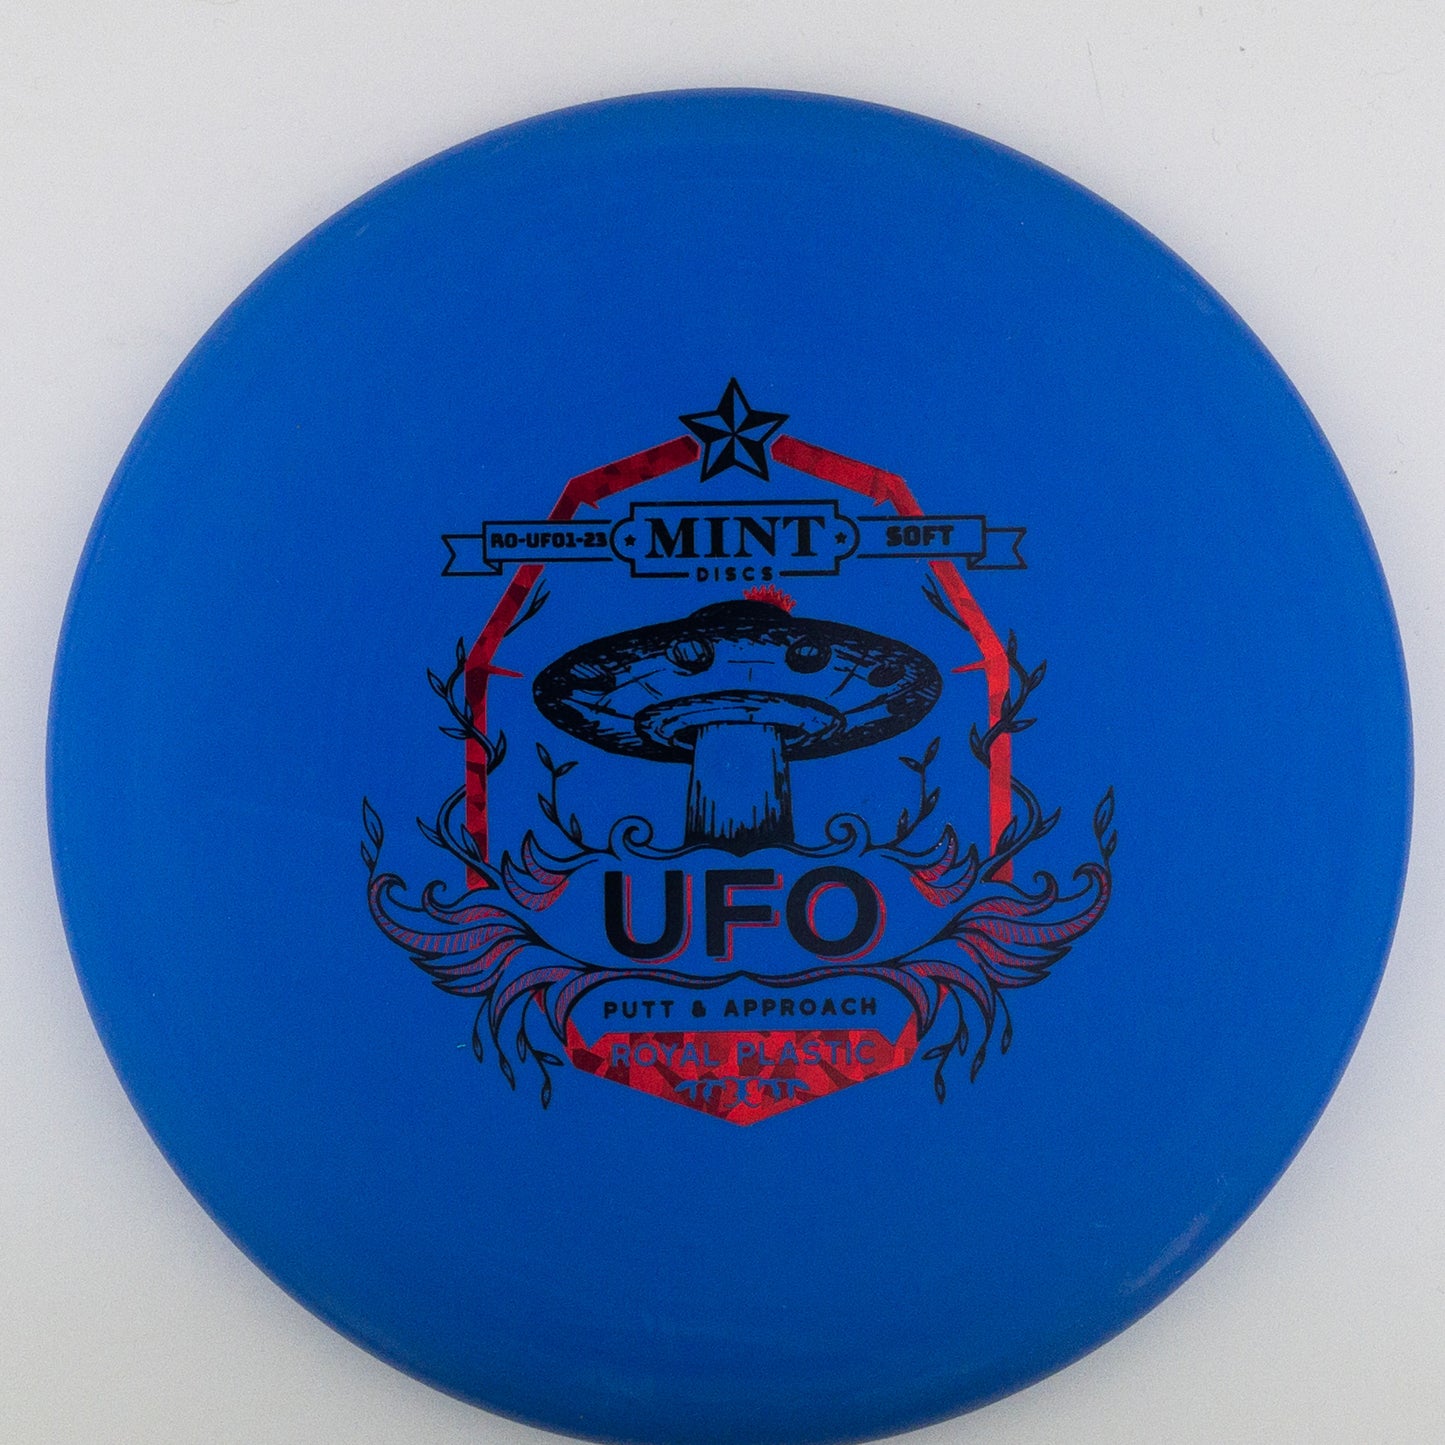 Mint Discs Royal UFO (Soft)